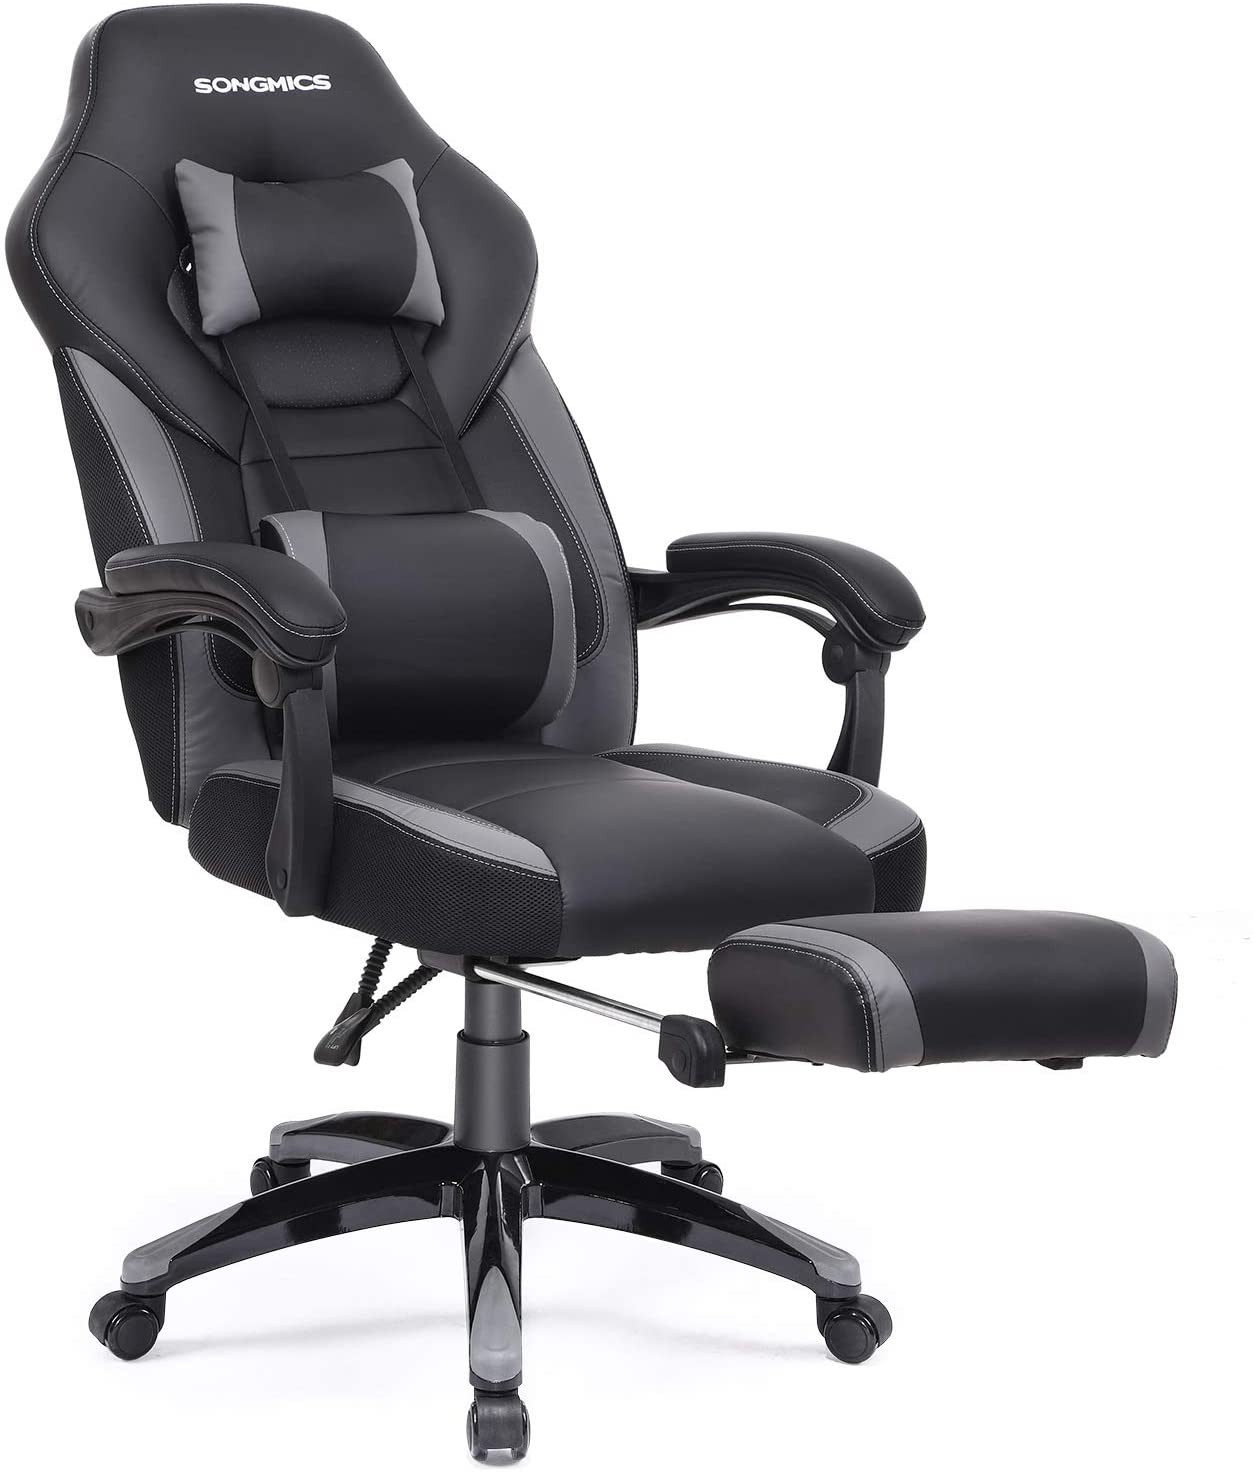 Kancelářská židle OBG77BG